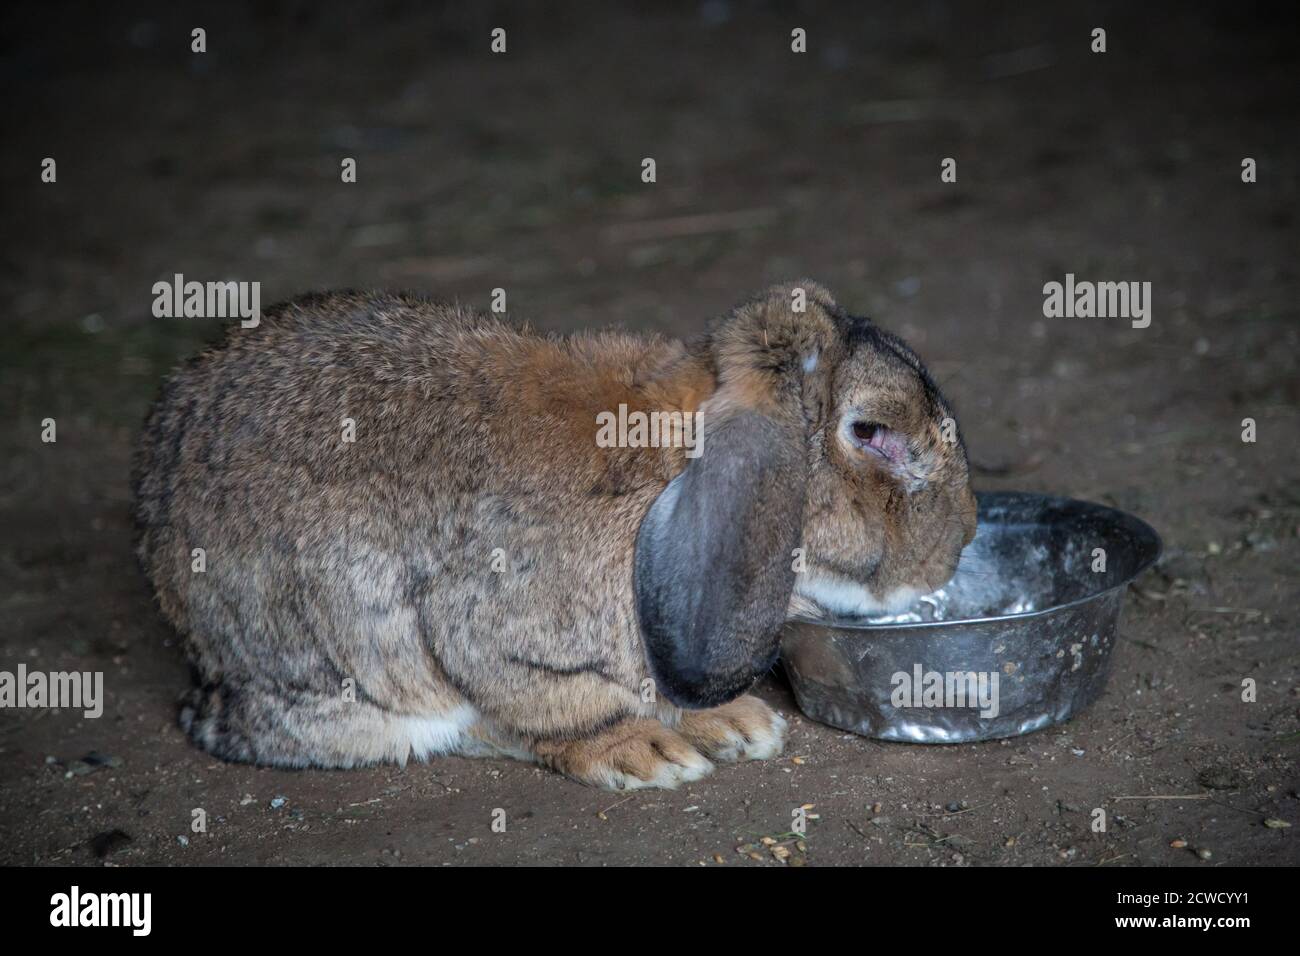 Viejo conejo marrón con orejas floppy comiendo de un tazón Foto de stock